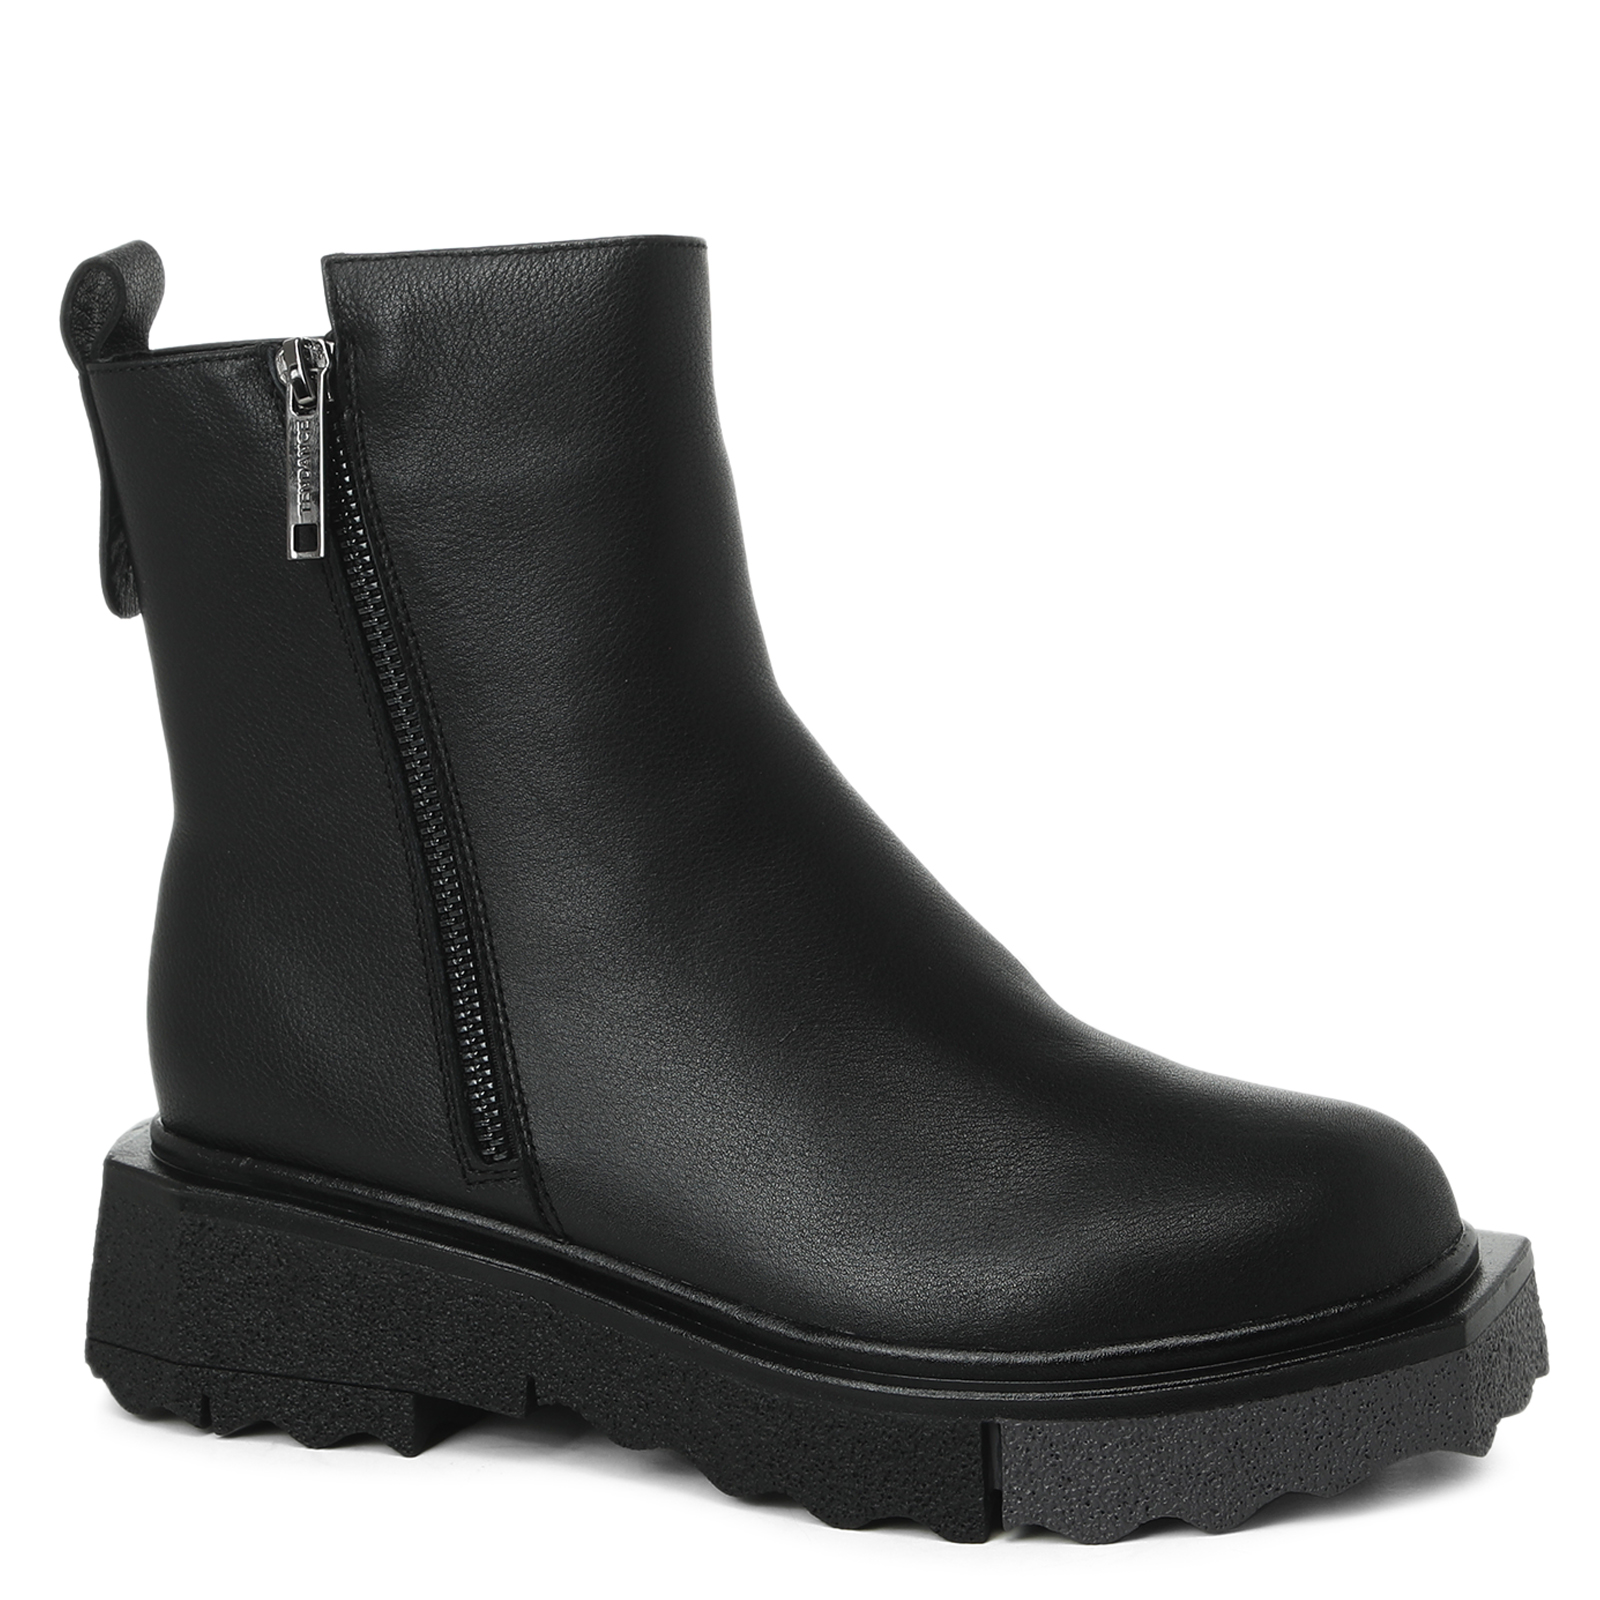 Черные женские ботинки Tendance X1755-03-1 размера 38 EU.